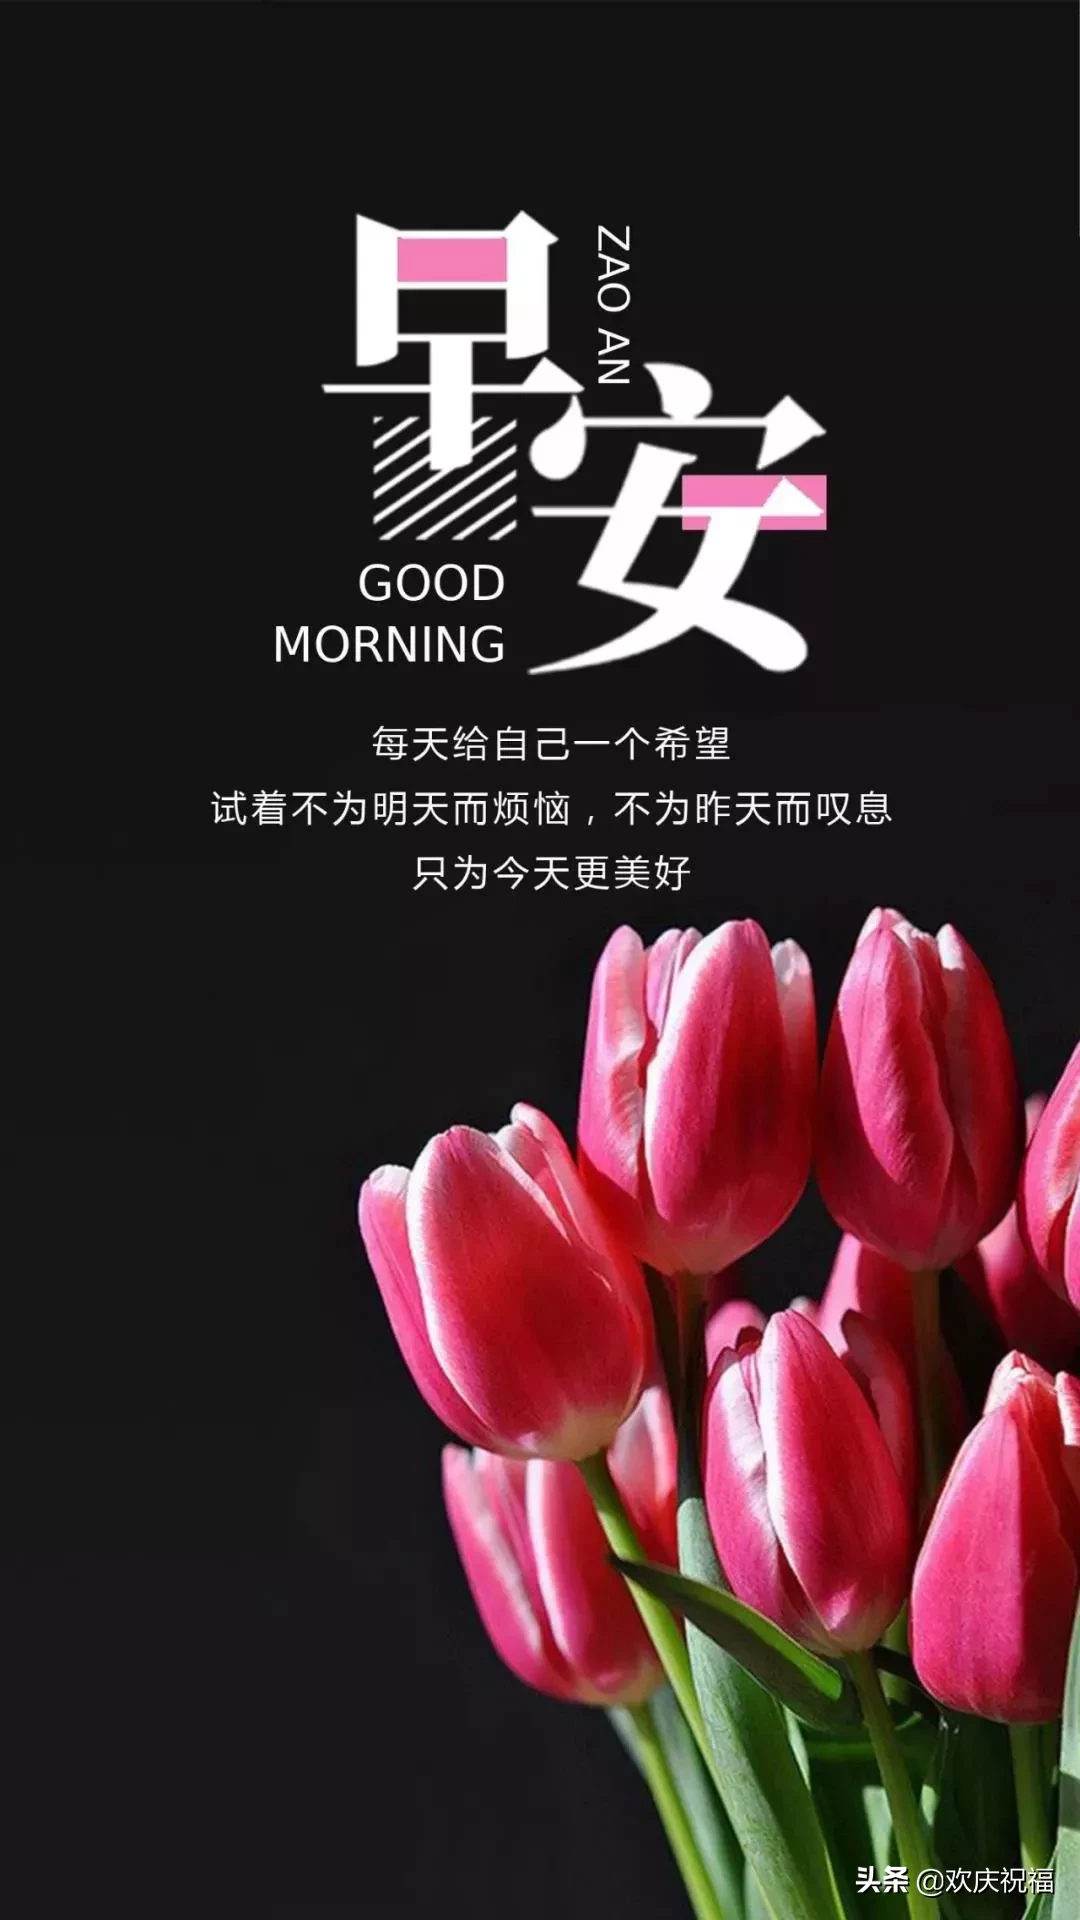 3月15日早安正能量励志语带图 周五早安心语正能量句子